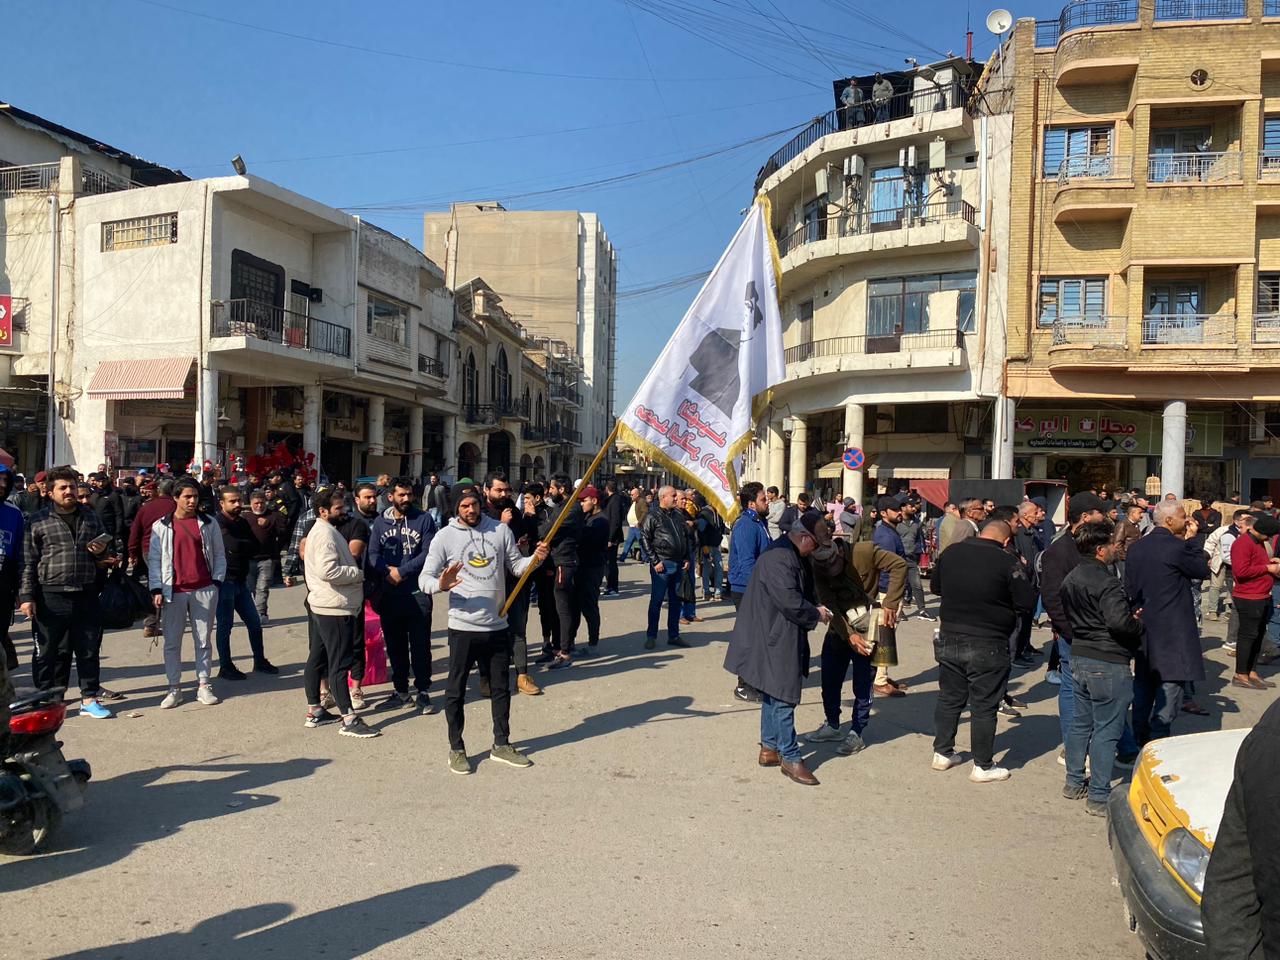 تظاهرات أمام البنك المركزي العراقي احتجاجًا على ارتفاع سعر الدولار